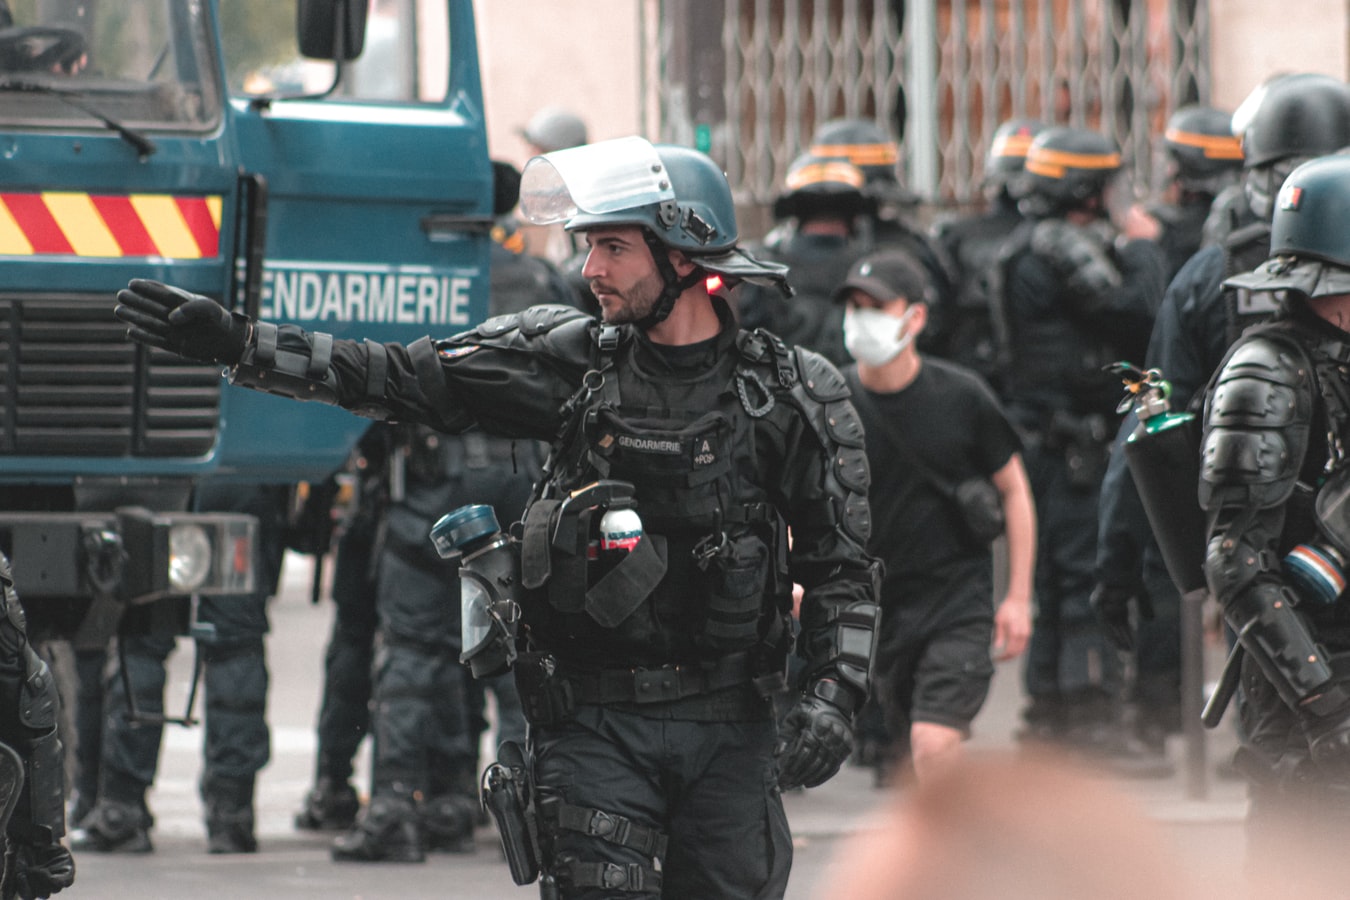 Πυροβολισμοί Παρίσι: Αγνοείται ο δράστης, περίμετρος ασφαλείας γύρω από το νοσοκομείο